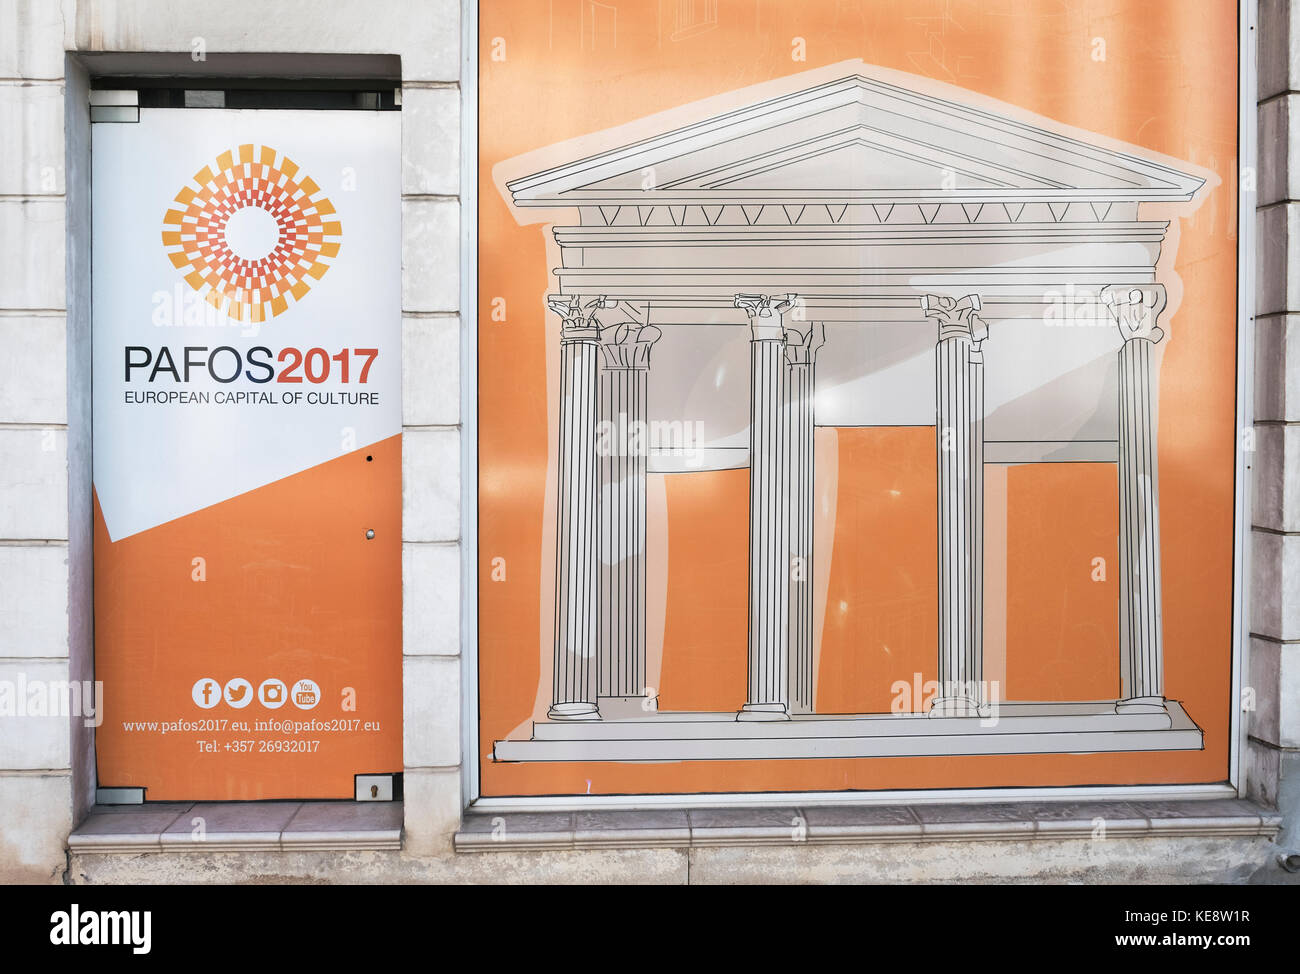 Une vitrine publicitaire de la Pafos 2017 Capitale Européenne de la Culture qui a été décerné à la ville de Paphos, Chypre. Banque D'Images